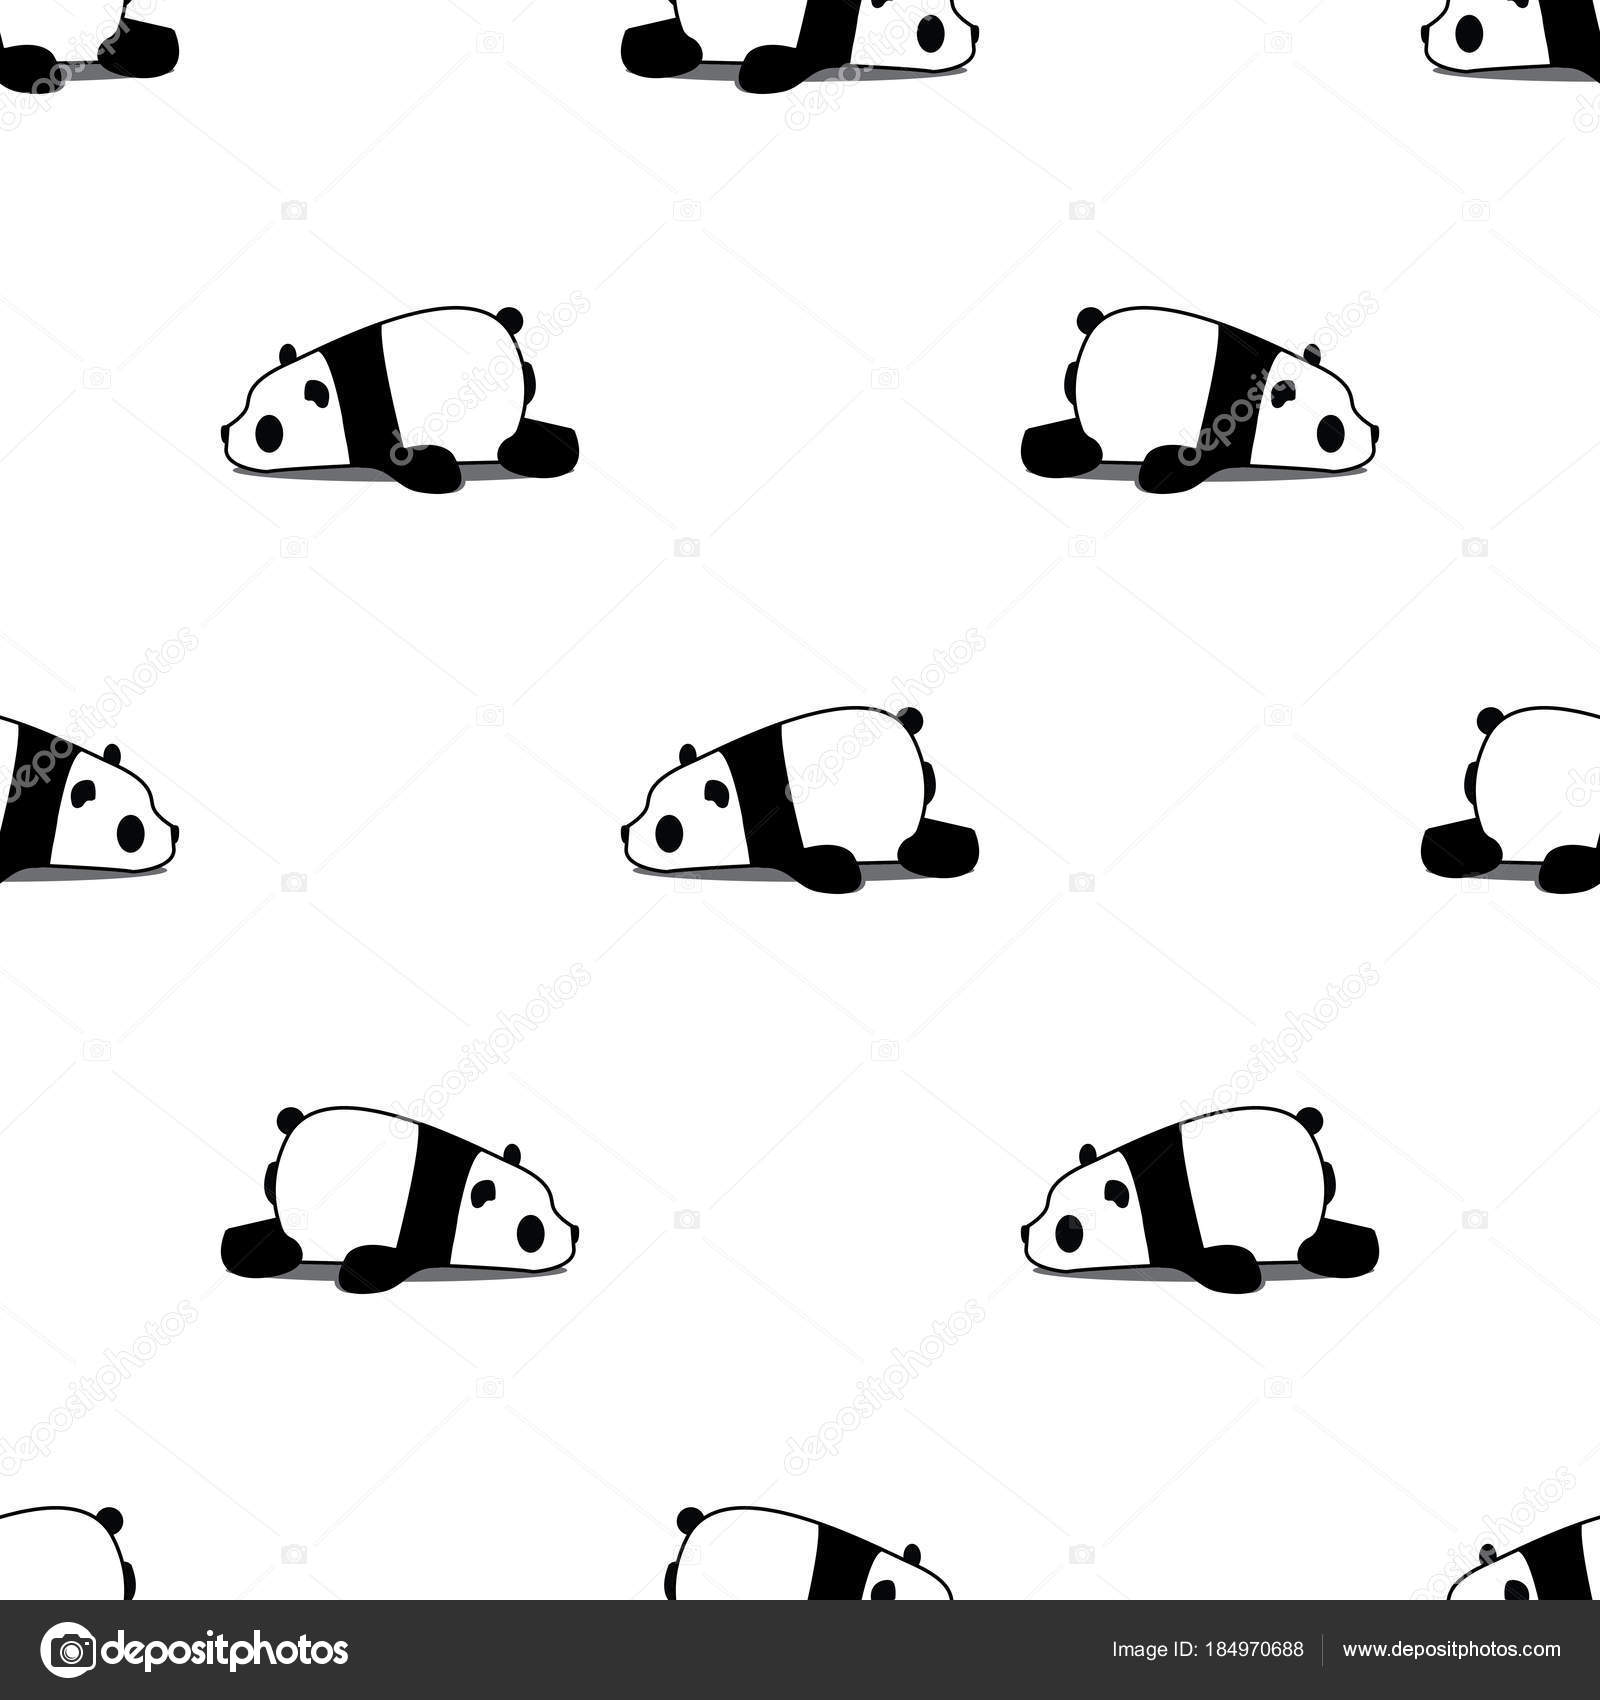 Download Free Mobile Phone Wallpaper Lazy Panda - 790 - MobileSMSPK.net